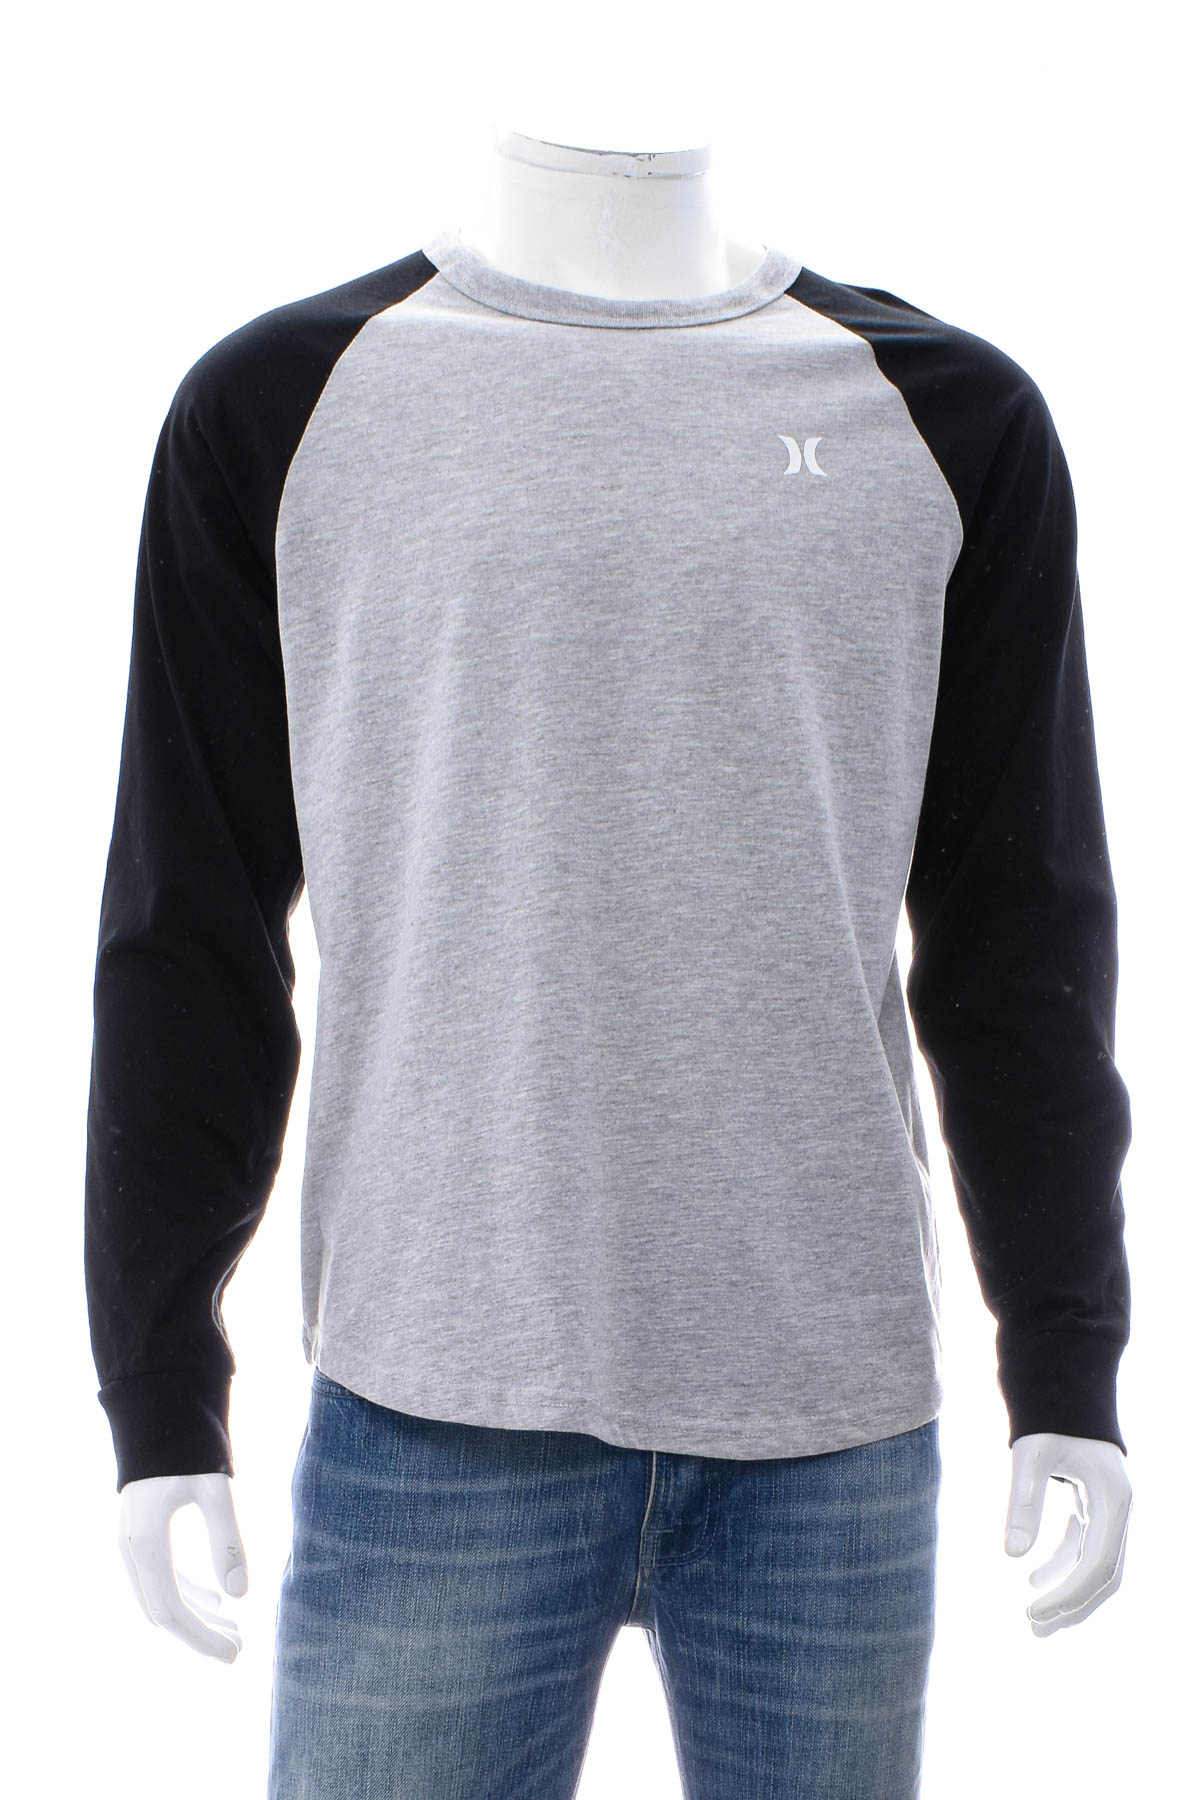 Men's sweater - Hurley - 0